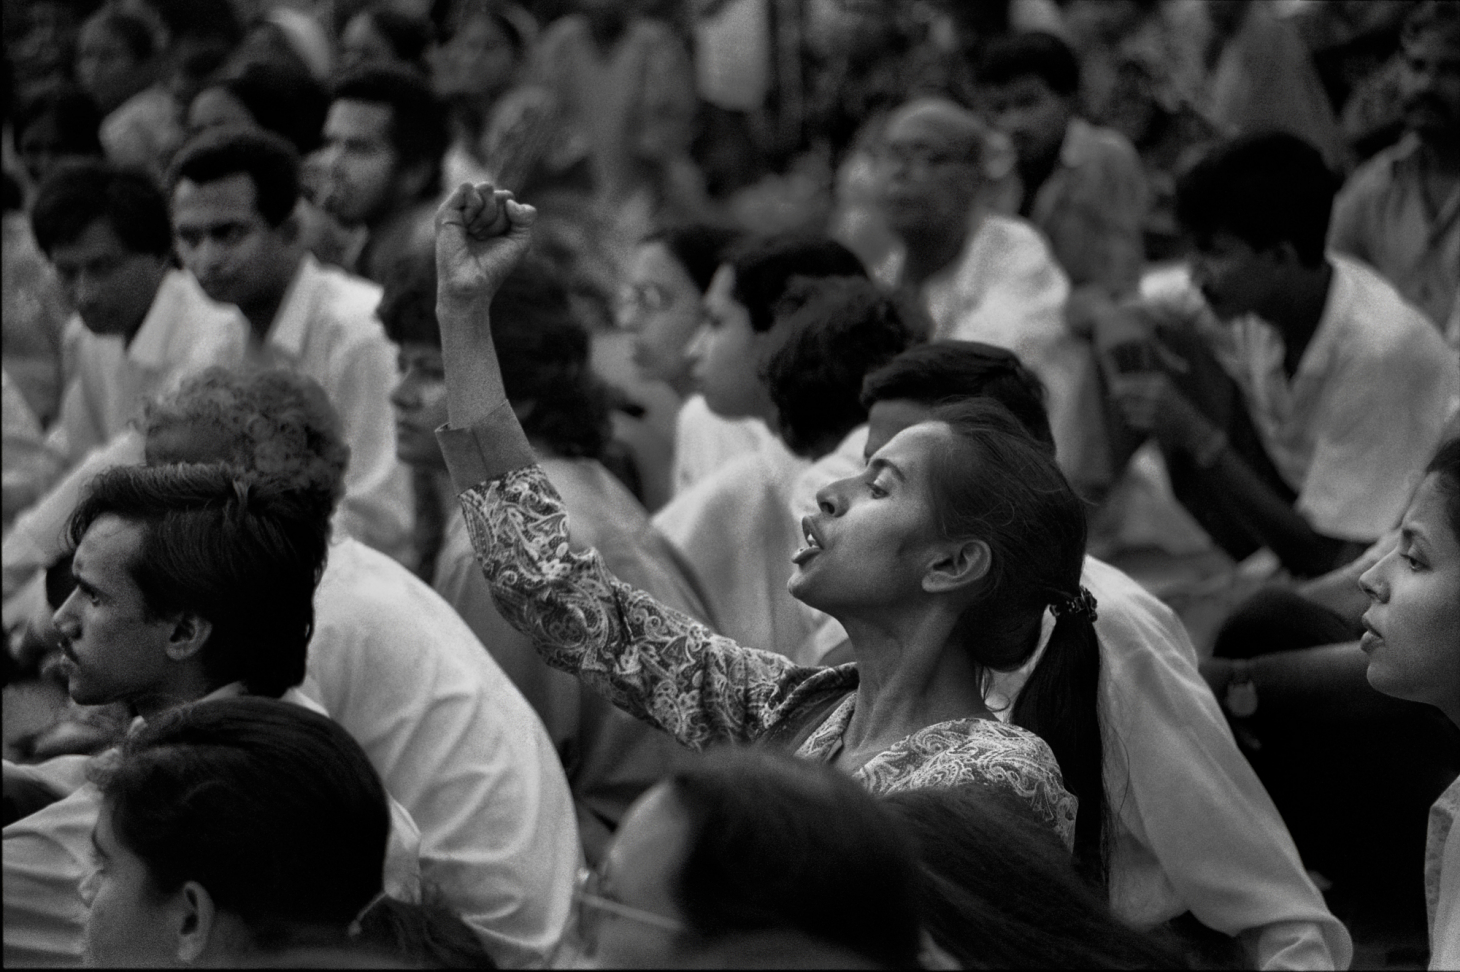 All Images © Shahidul Alam. “Smriti Azad at Protest at Shaheed Minar ( Shaheed Minar, Dhaka, Bangladesh)” 1994.